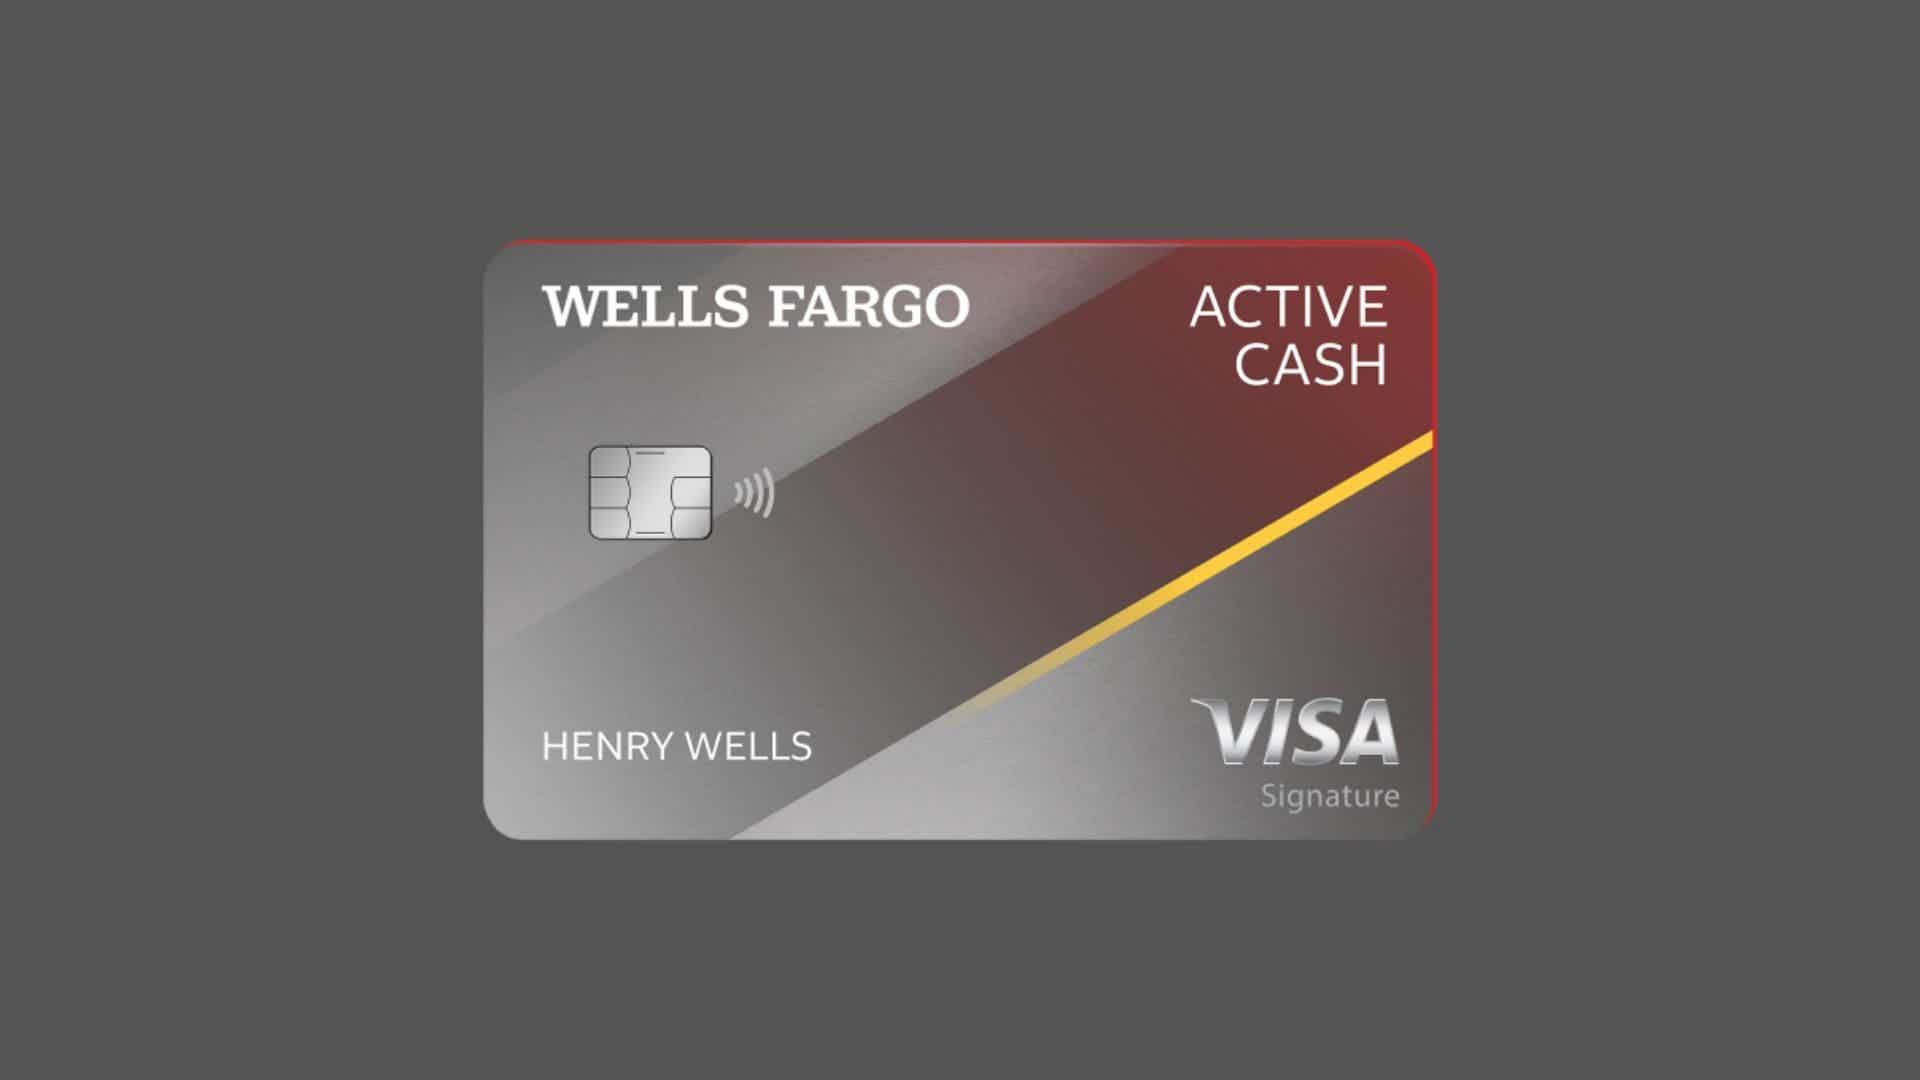 Como funciona o cartão? Fonte: Wells Fargo.